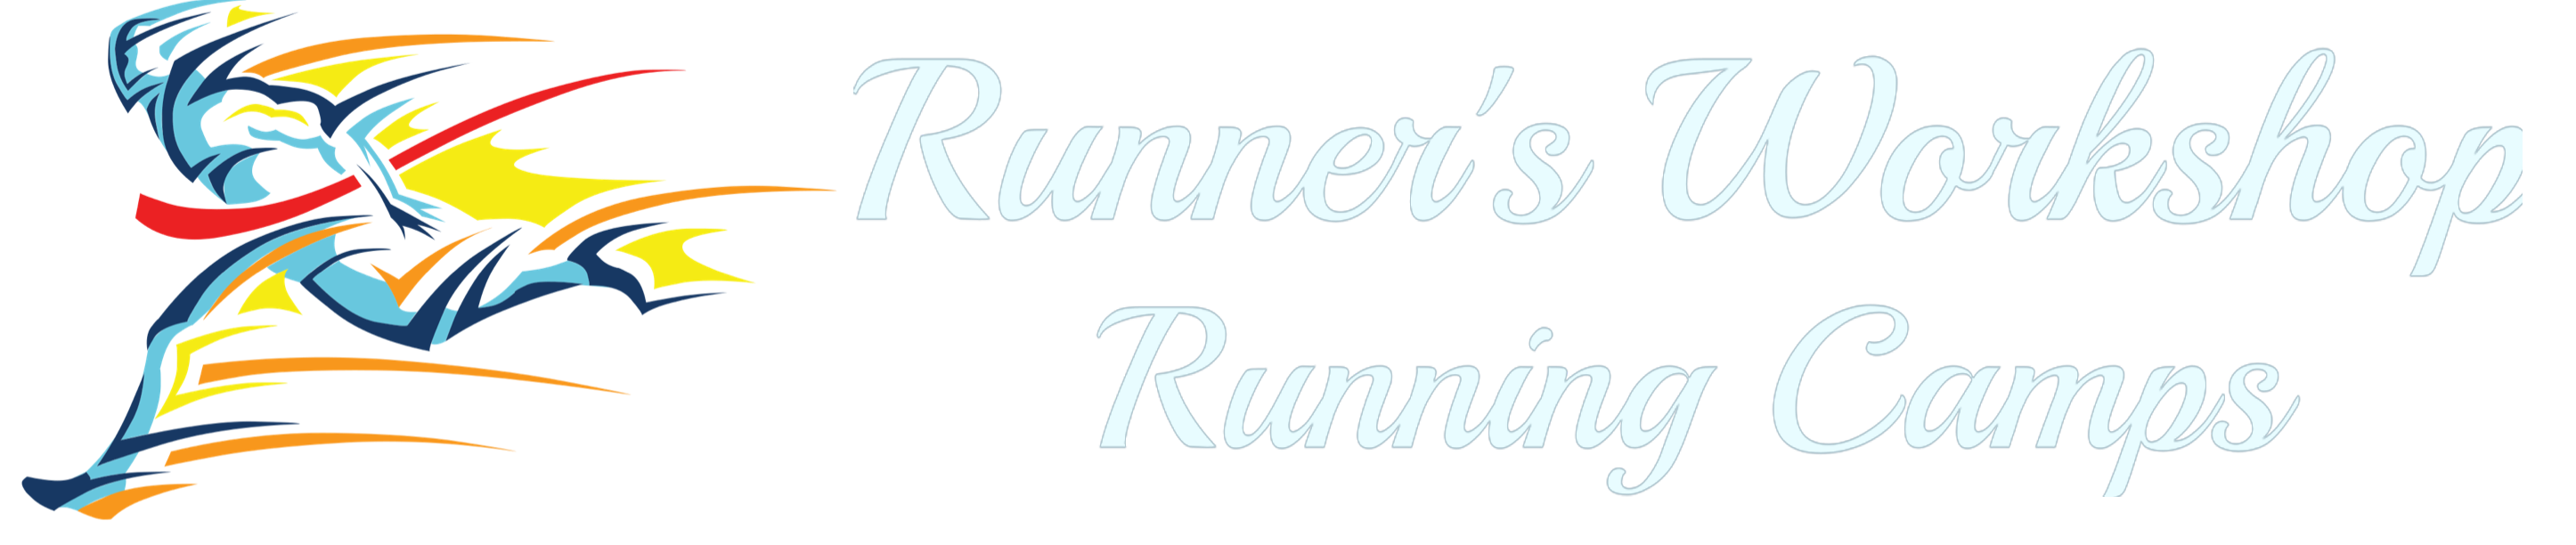 Runners Workshop